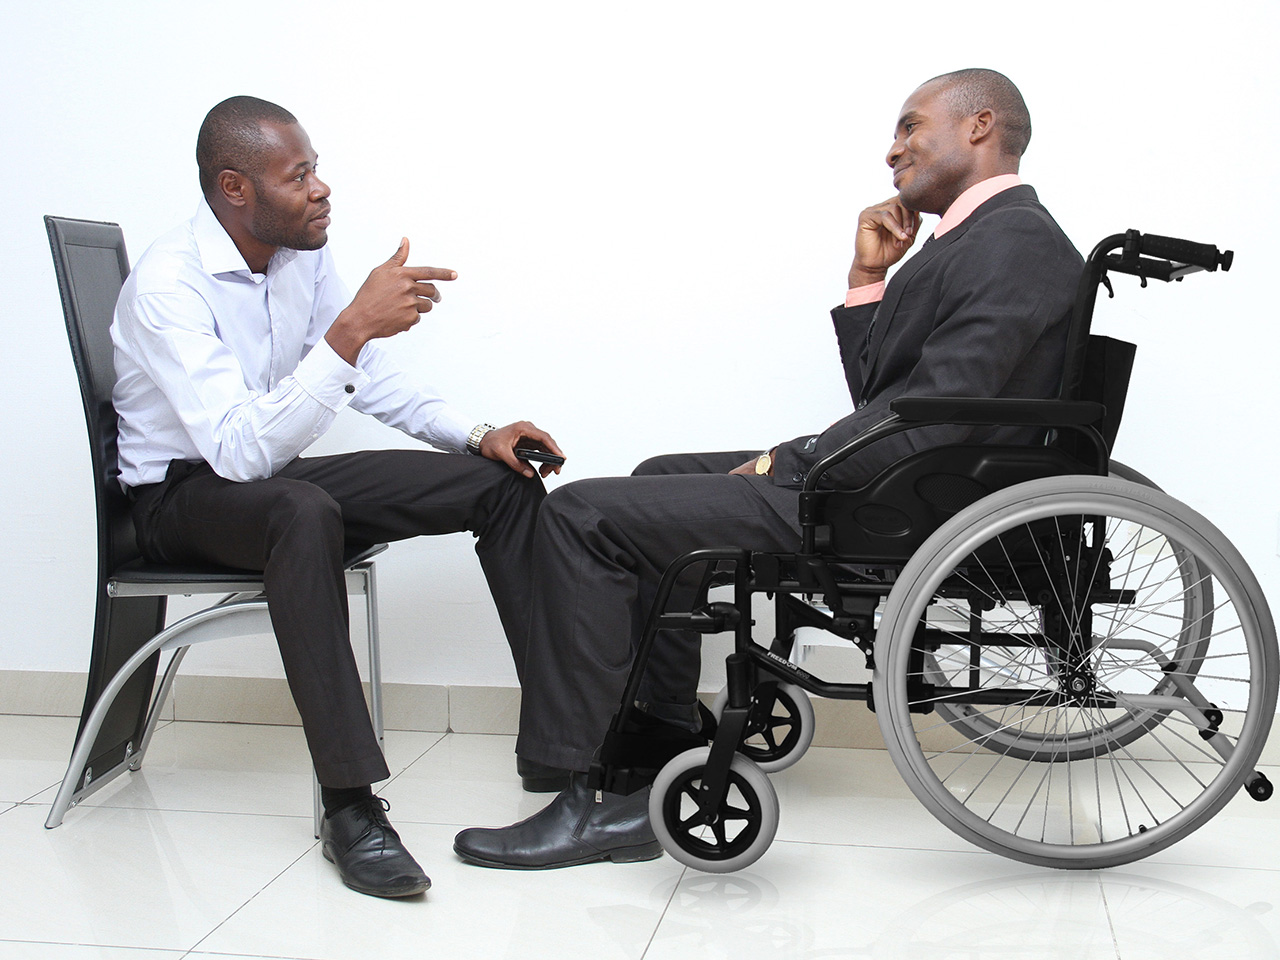 Dva formalno odjevena tamnoputa muškarca sjede jedan nasuprot drugom u opuštenom razgovoru. Dok jedan sjedi na stolici, drugi je u invalidskim kolicima.